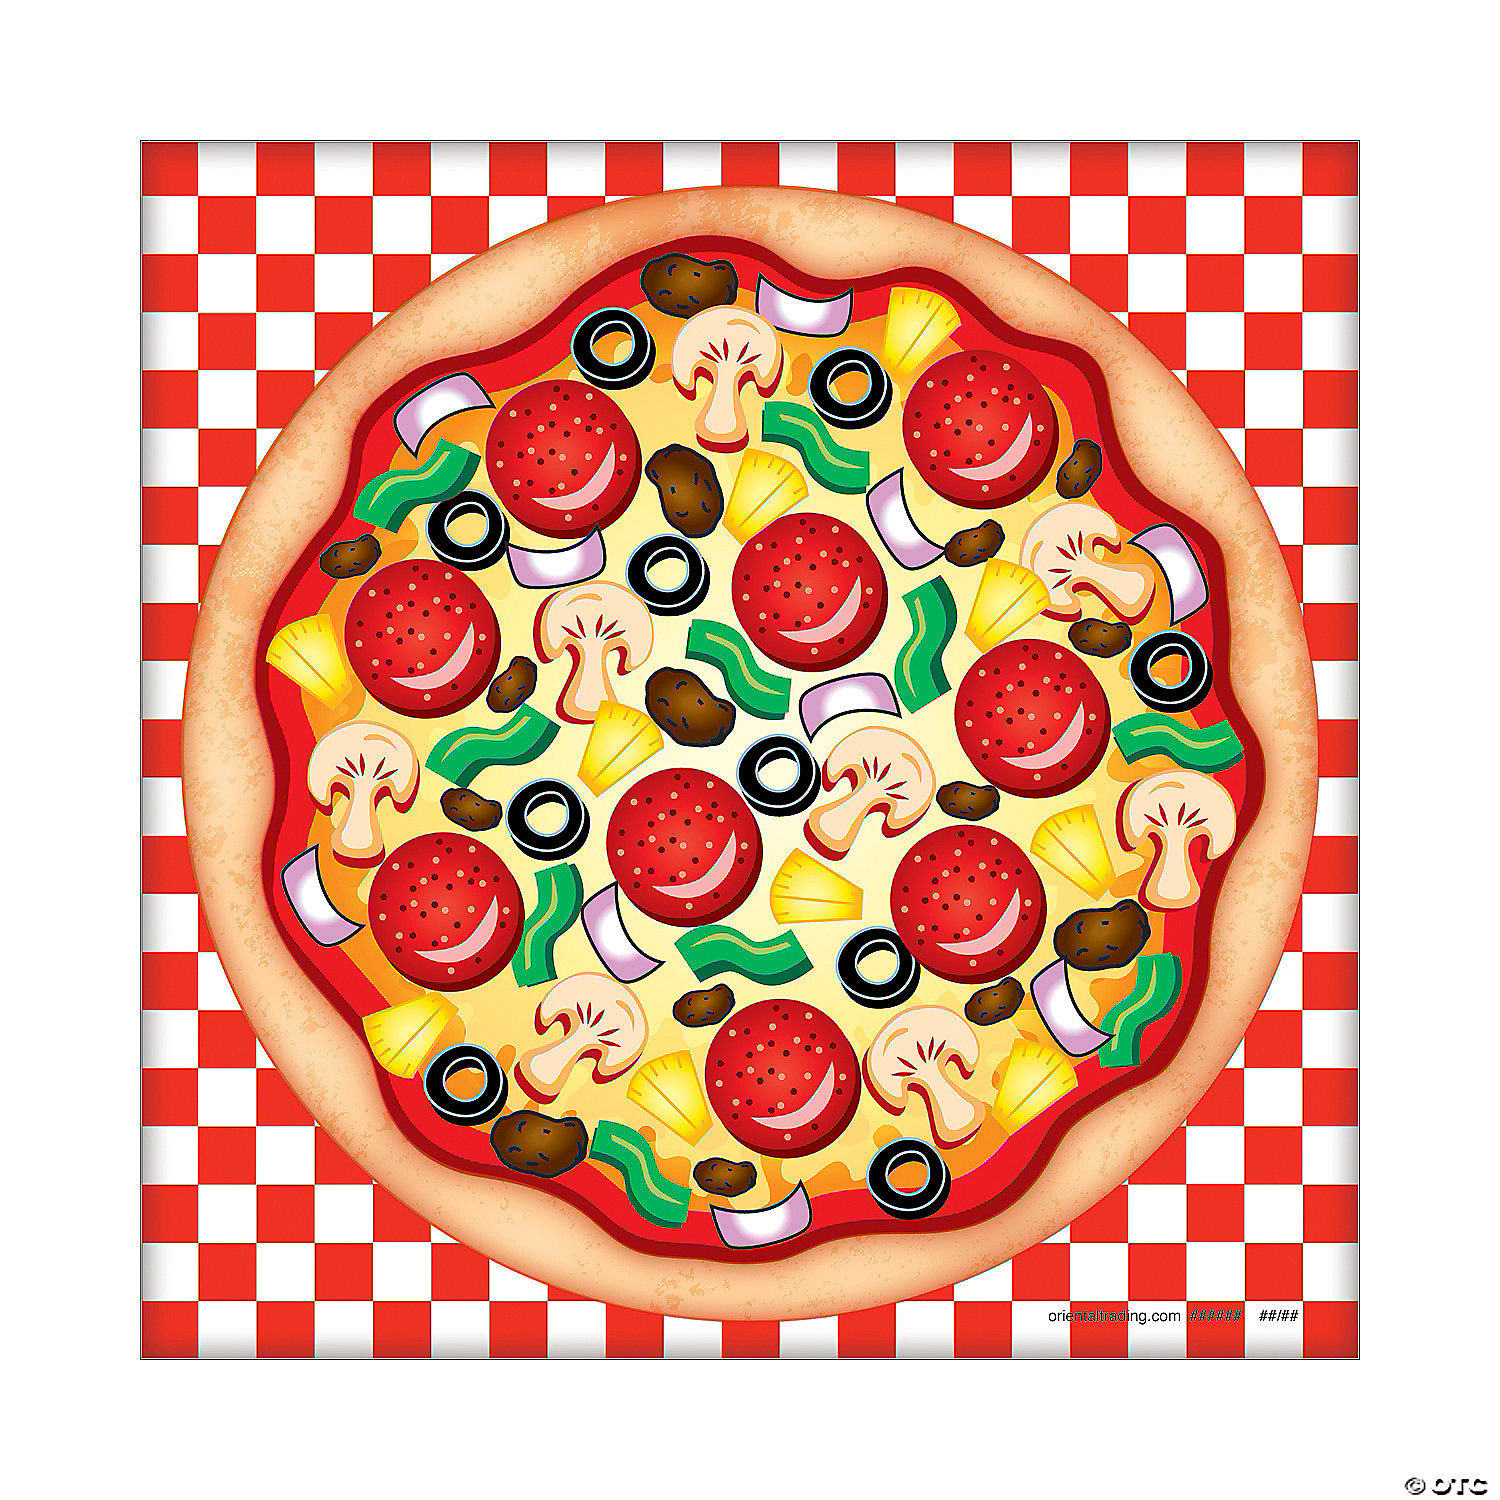 Mini Pizza Sticker Scenes - 12 Pc.